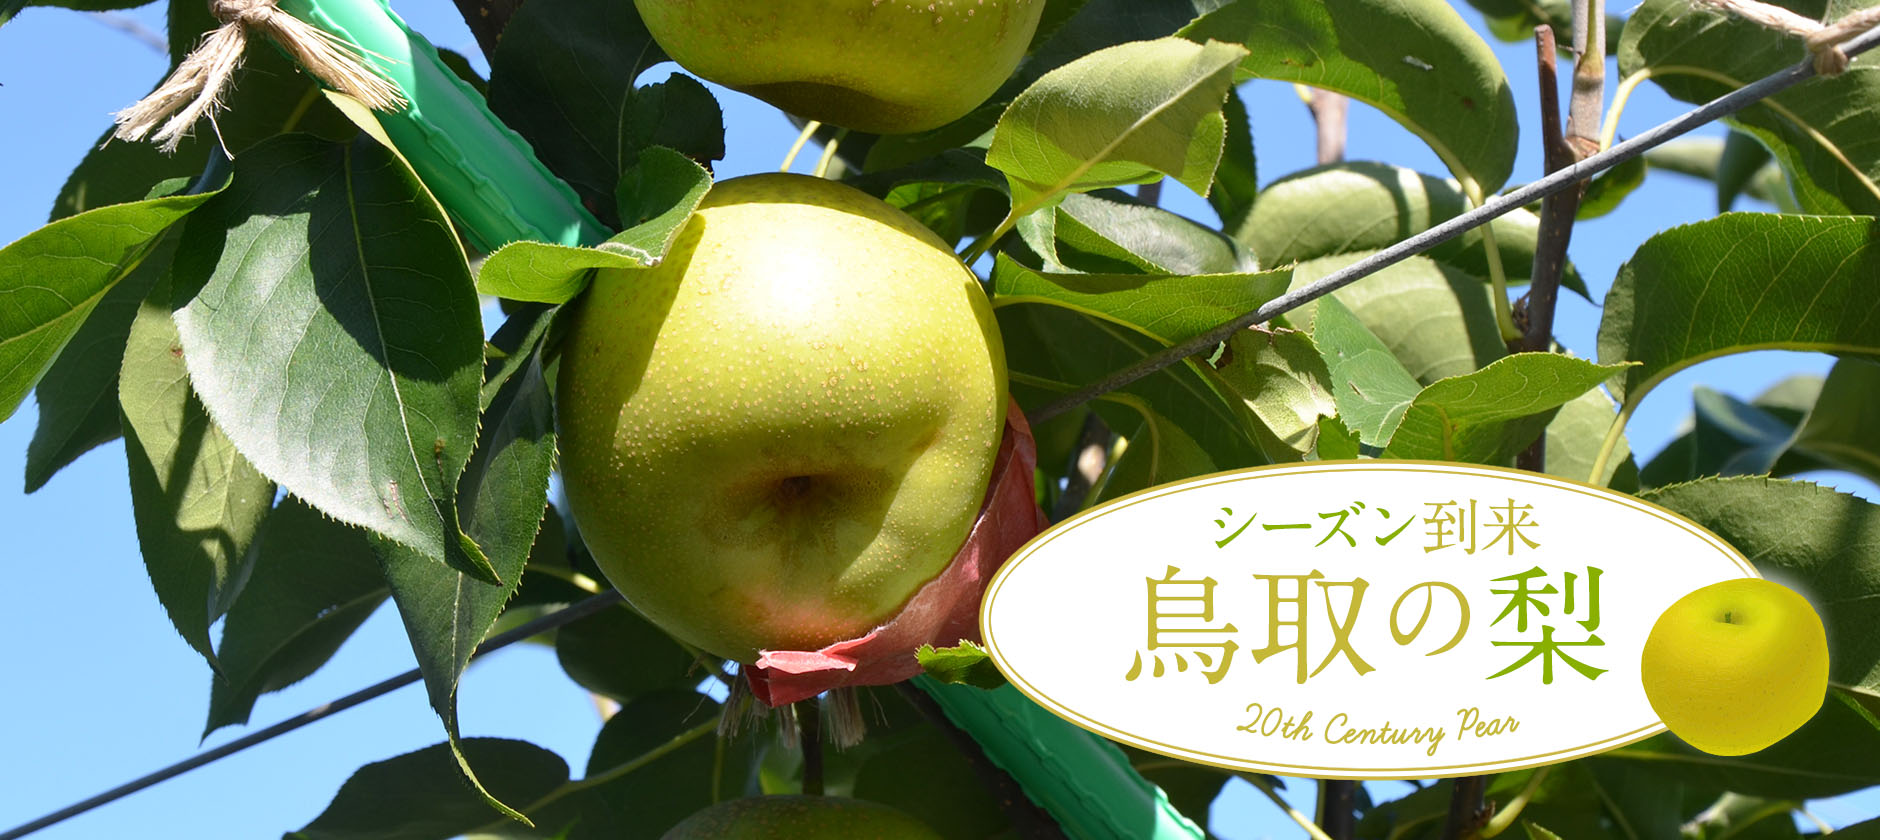 鳥取の梨シーズン到来 鳥取県観光案内 とっとり旅の生情報